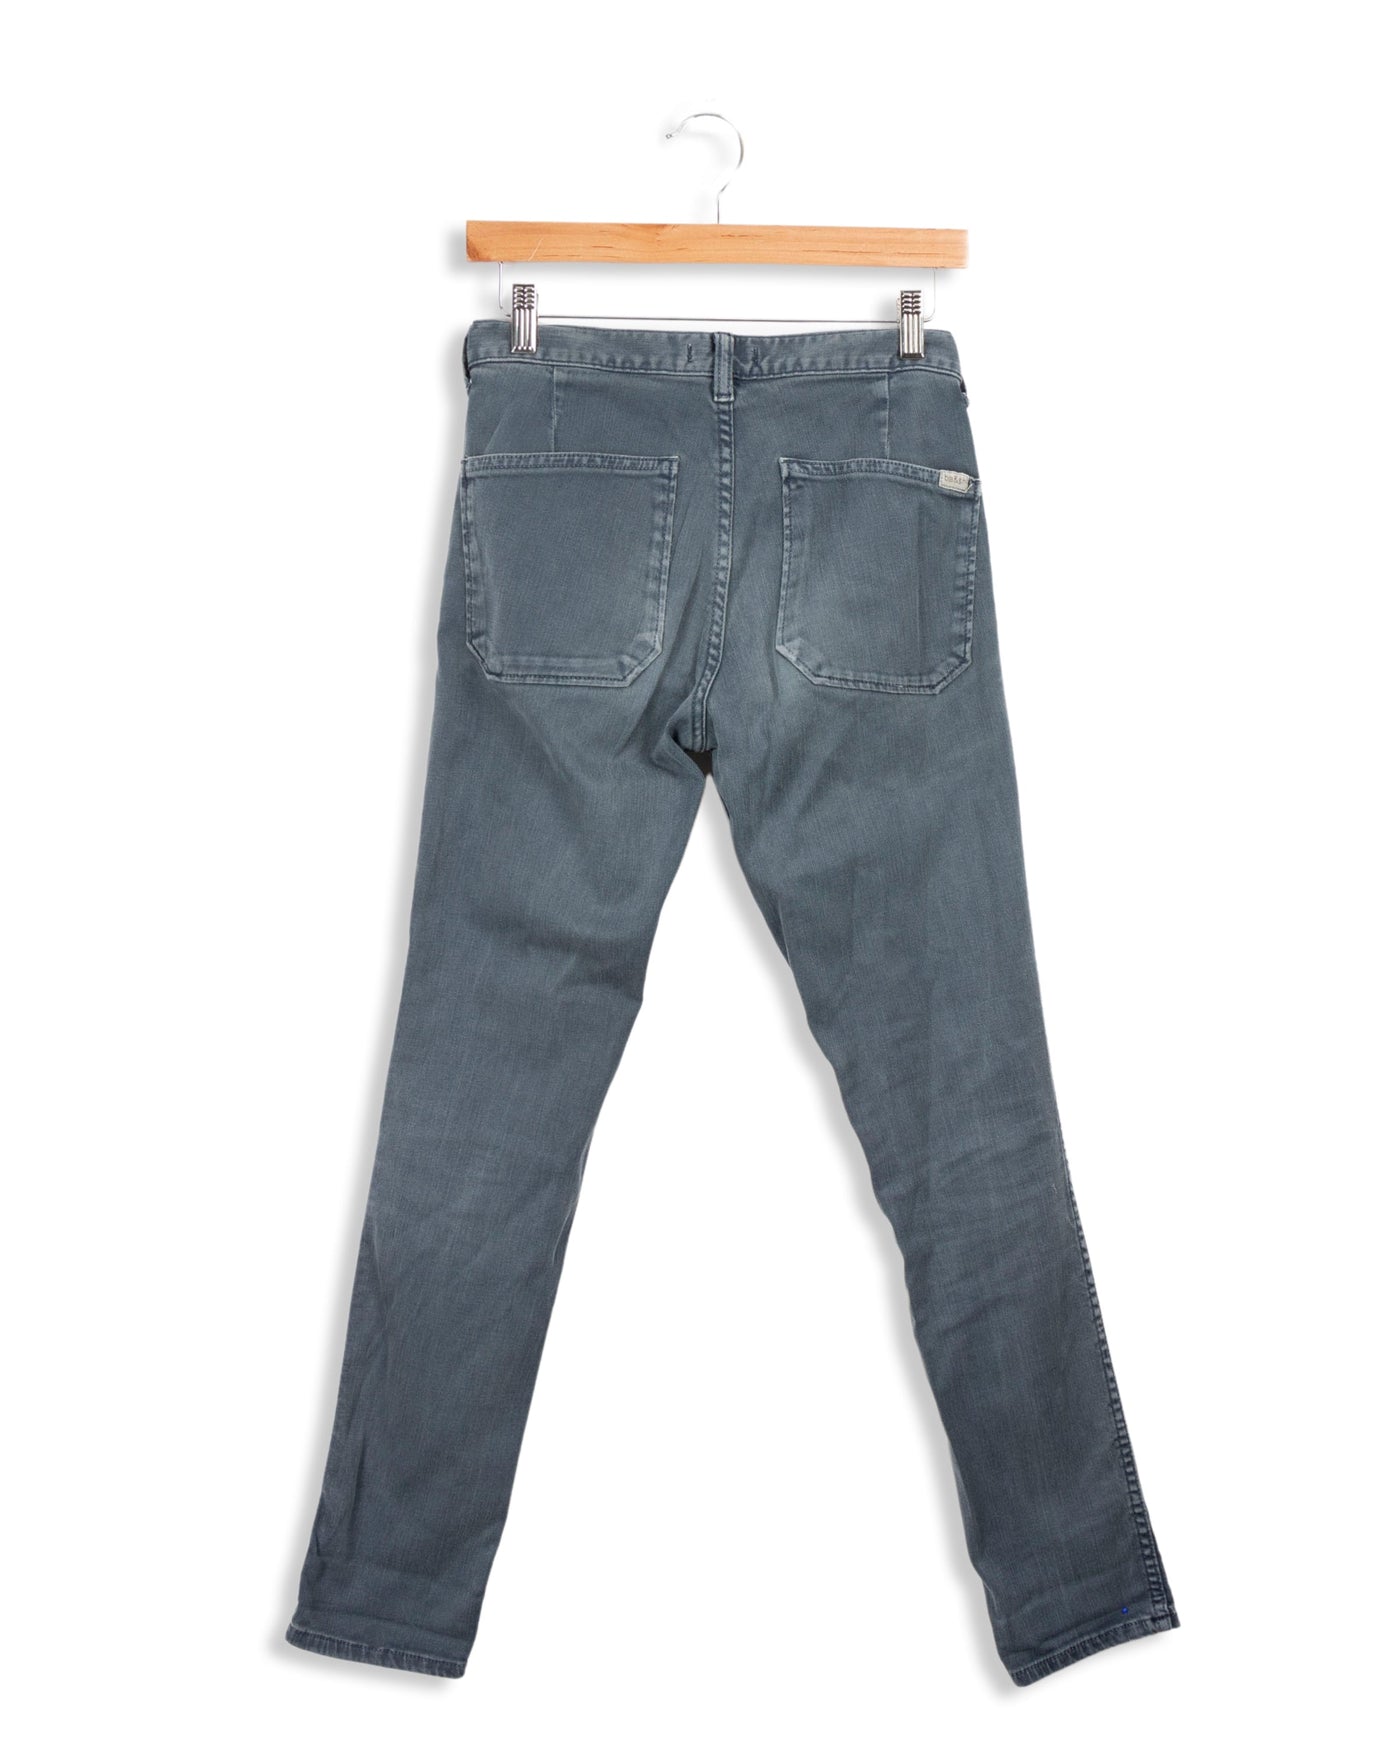 Graublaue Jeans - [24-25]